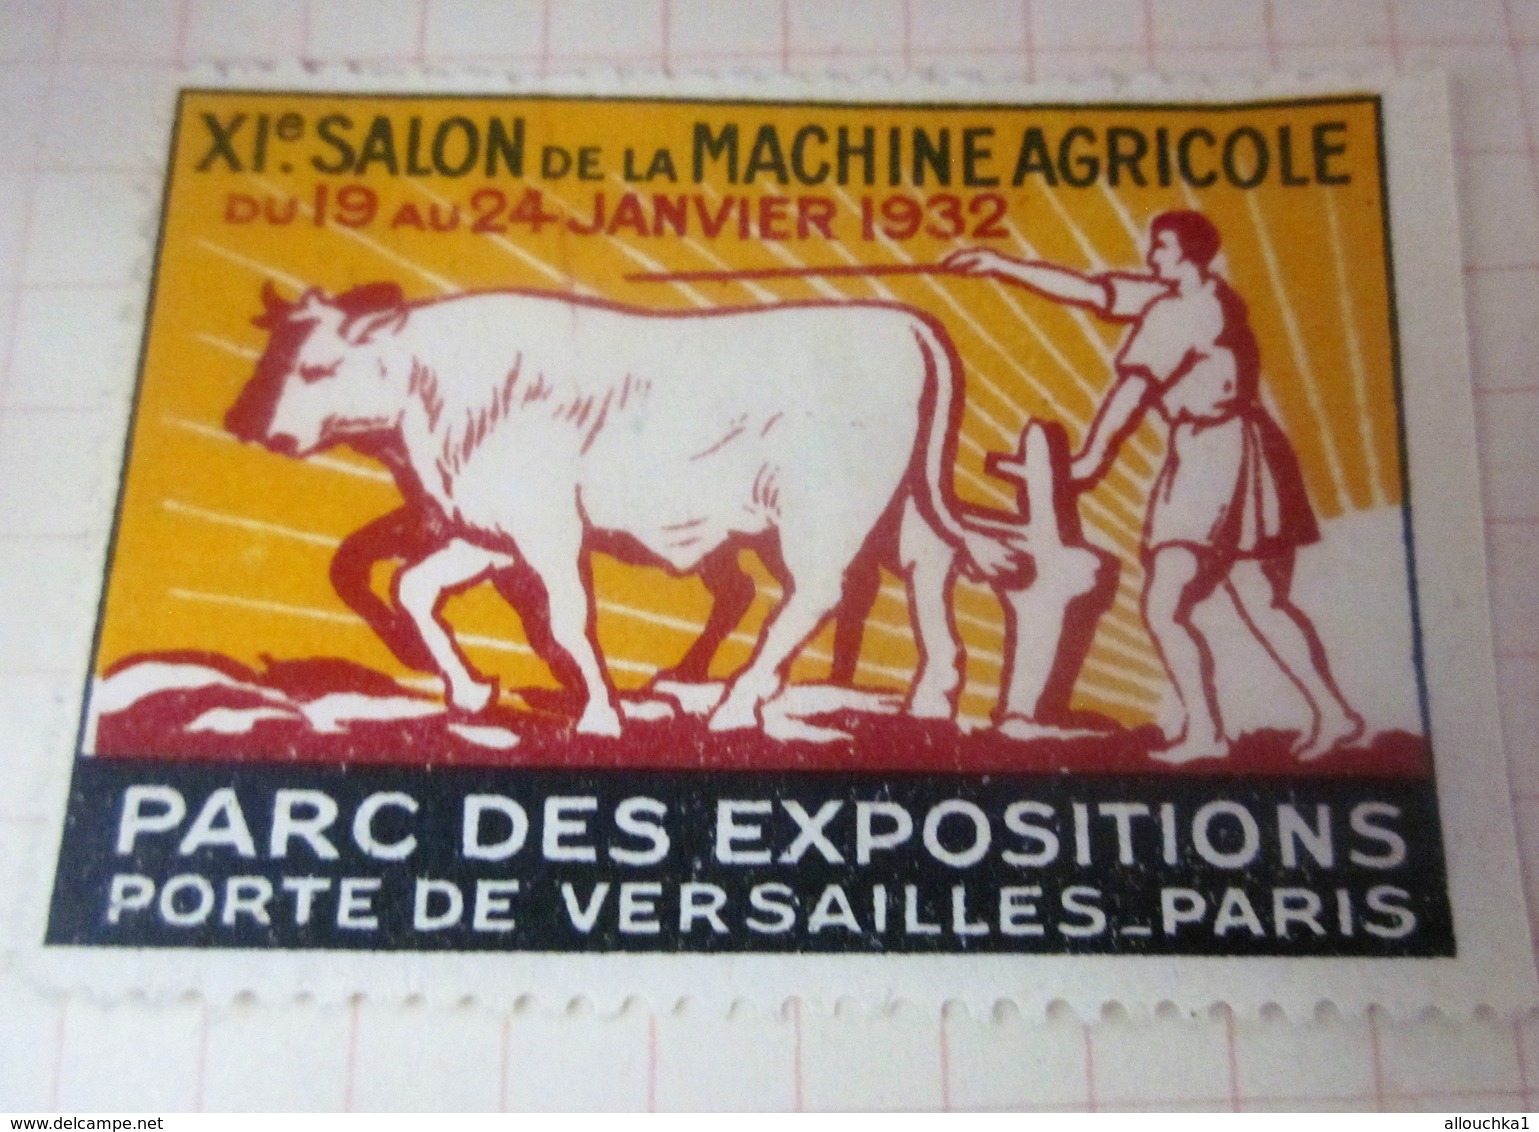 1932 PORTE DE VERSAILLES PARIS XIé SALON DE LA MACHINE AGRICOLE  - Agriculture  -Timbre Vignette Erinnophilie -Neuf * - Tourisme (Vignettes)